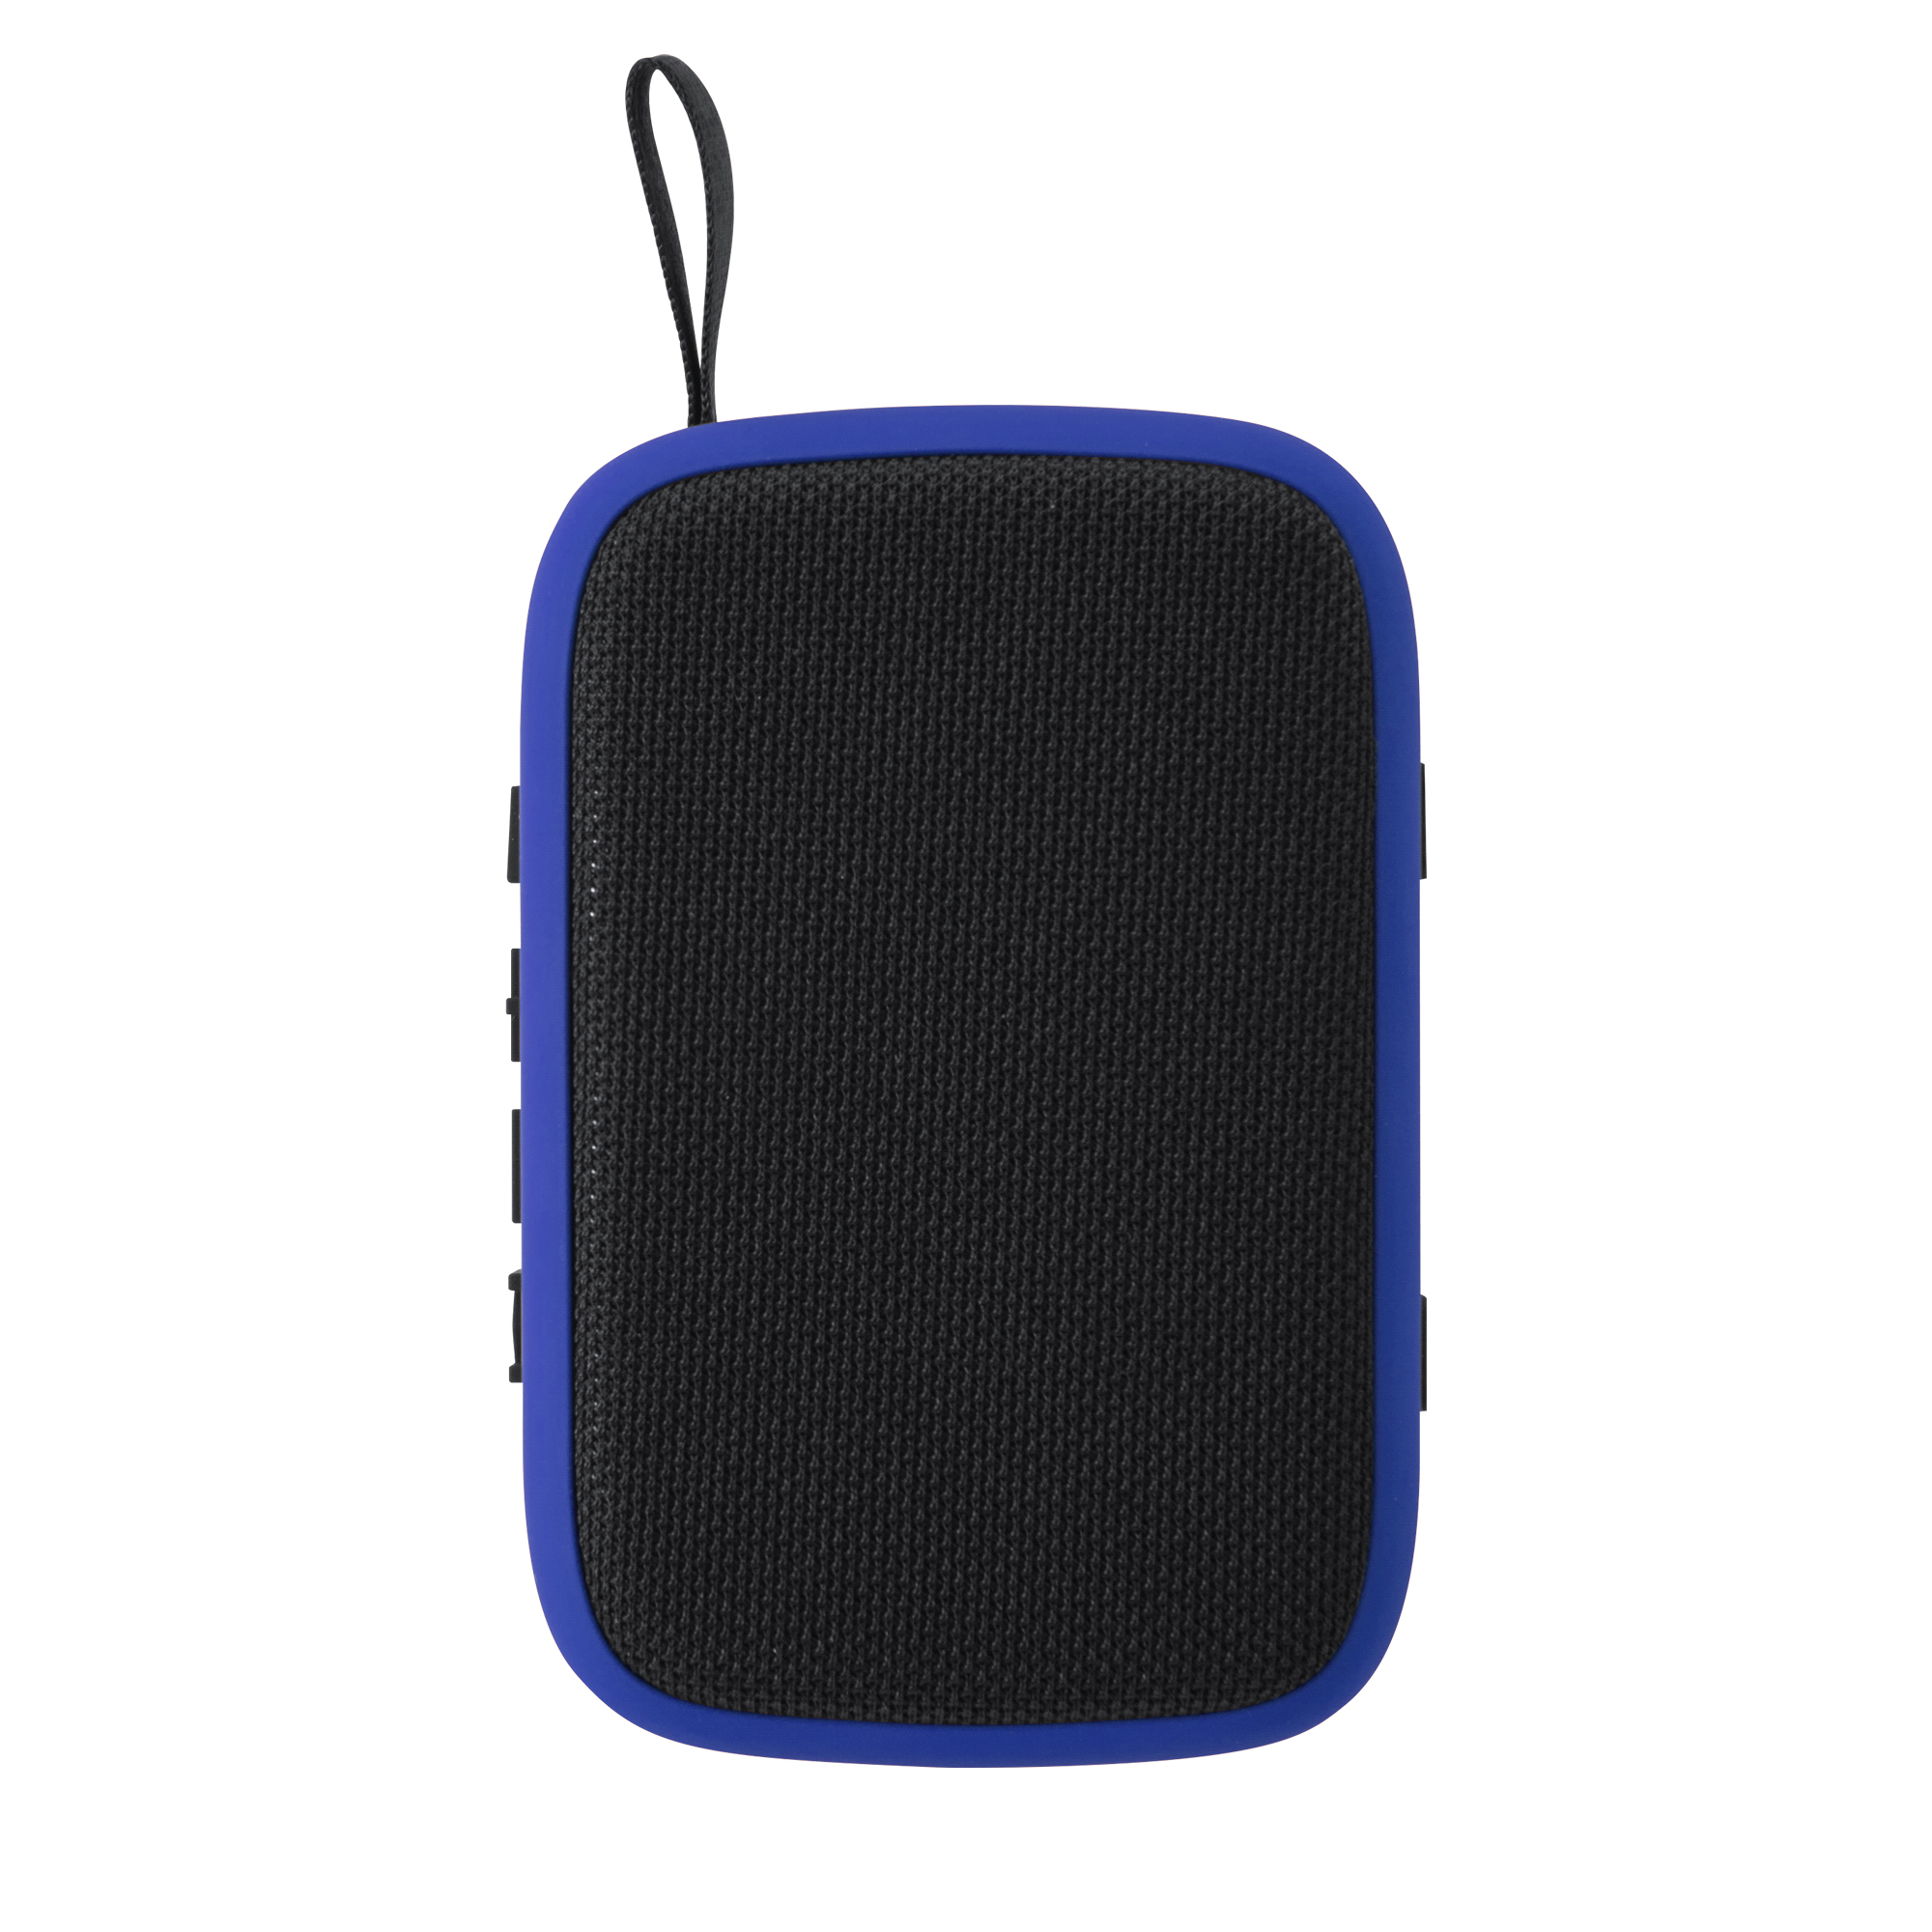 9080-timothy-speaker-wireless-blu.jpg